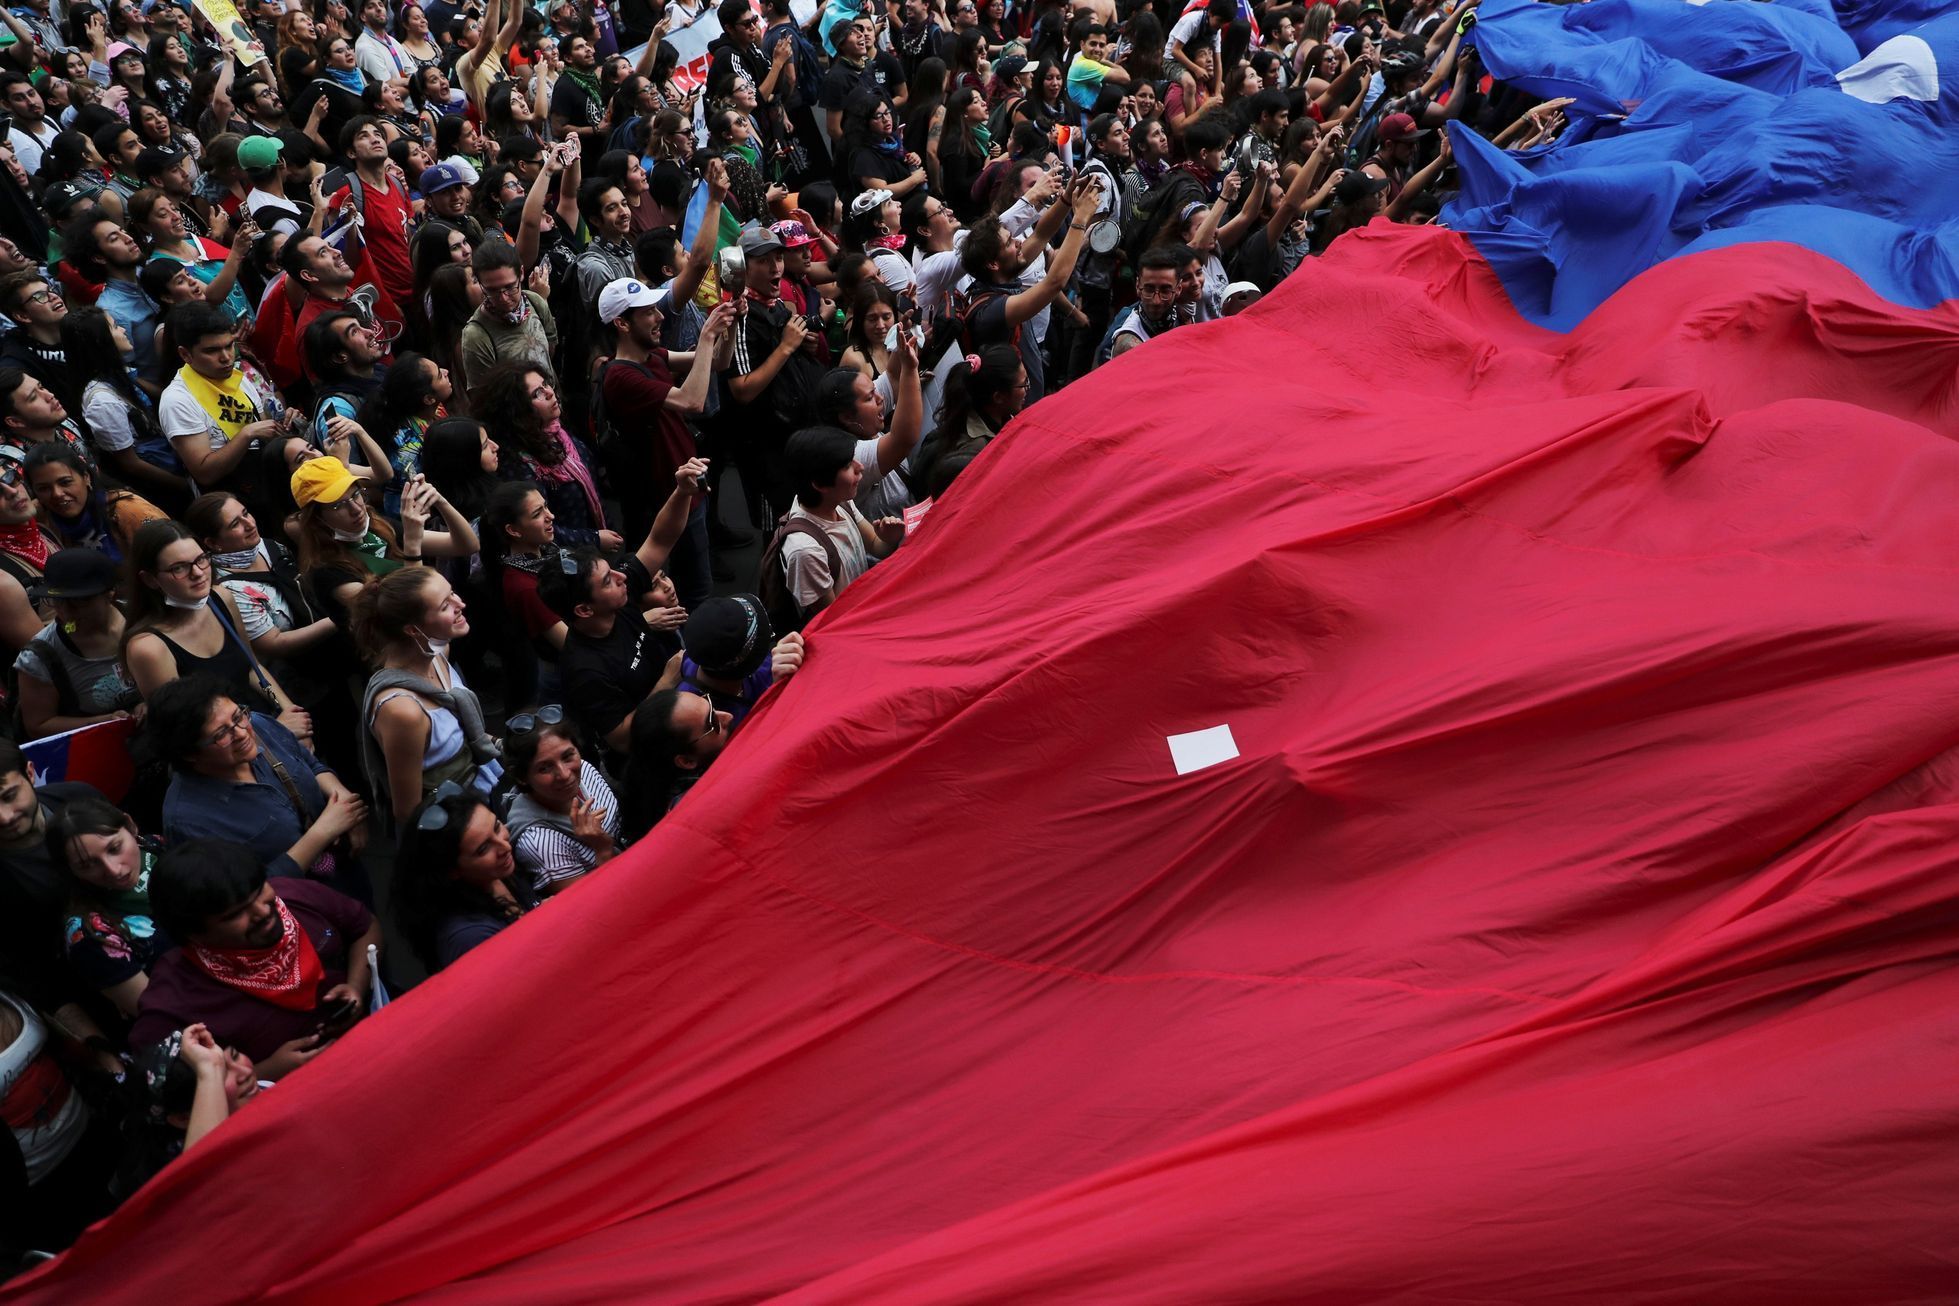 Protestní pochod v Chile